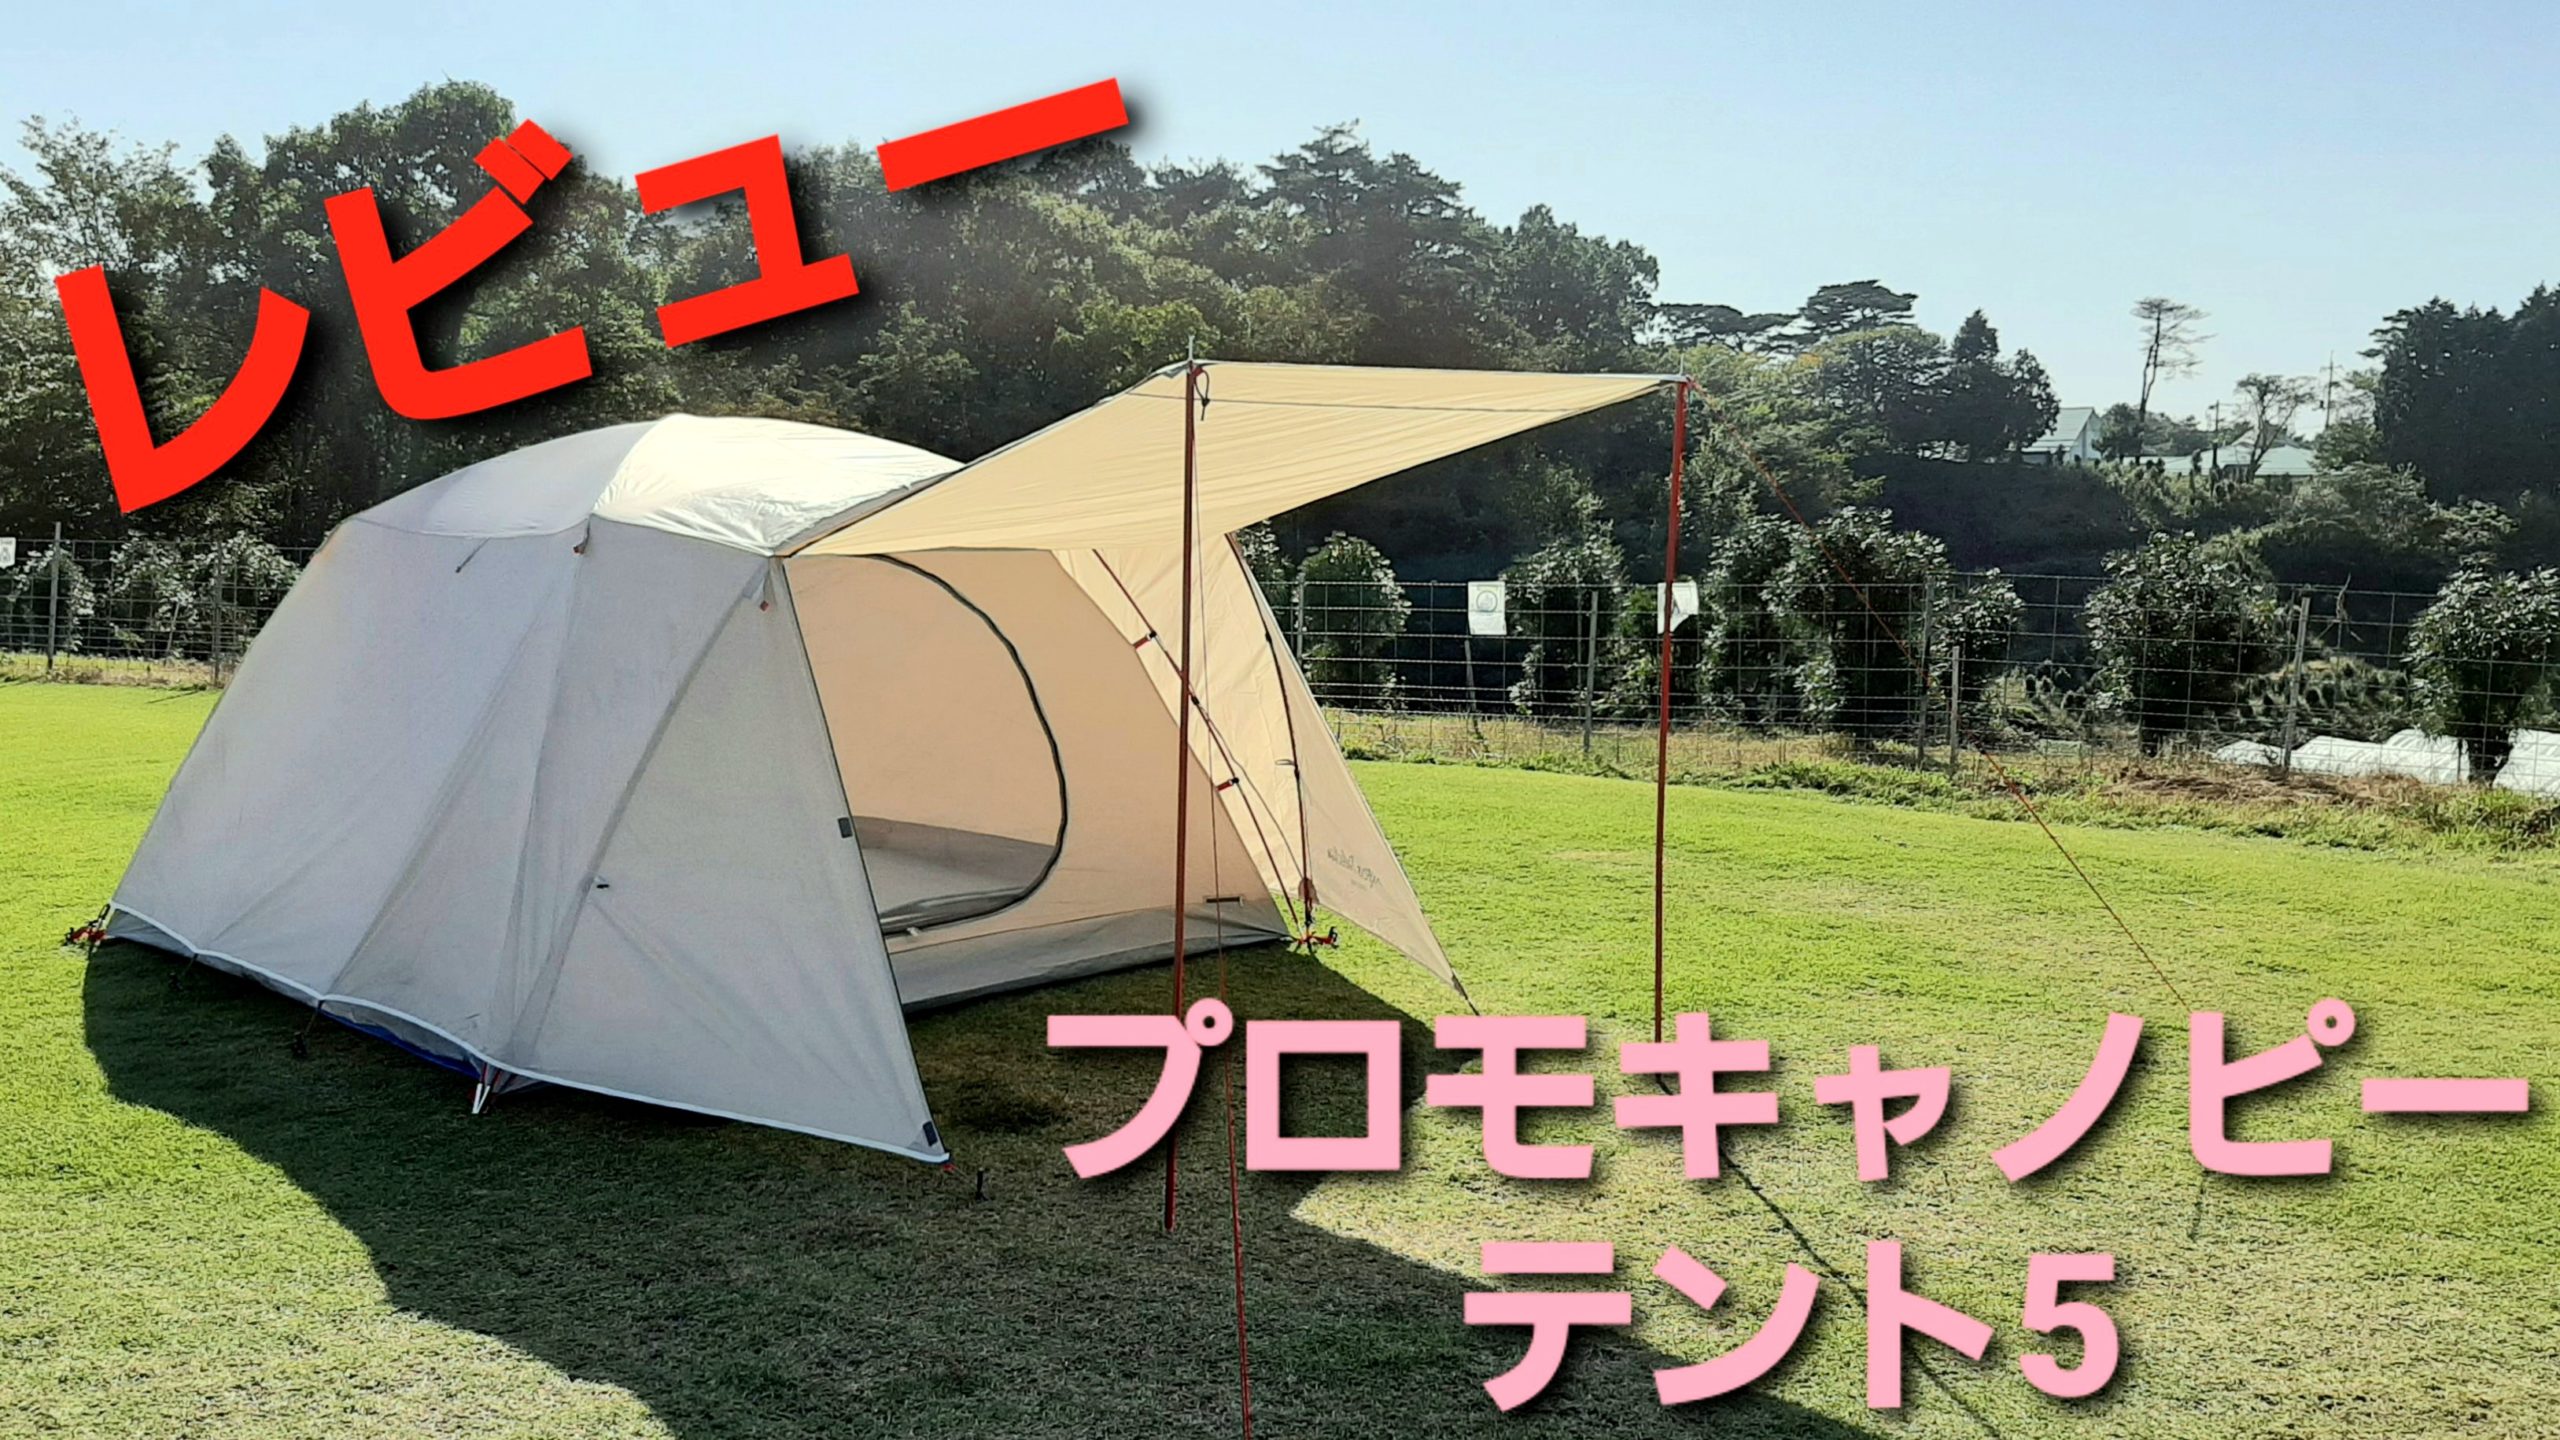 2021新商品 Motomoto ペグ チタン製 テント用 タープ用 30㎝ 16本 